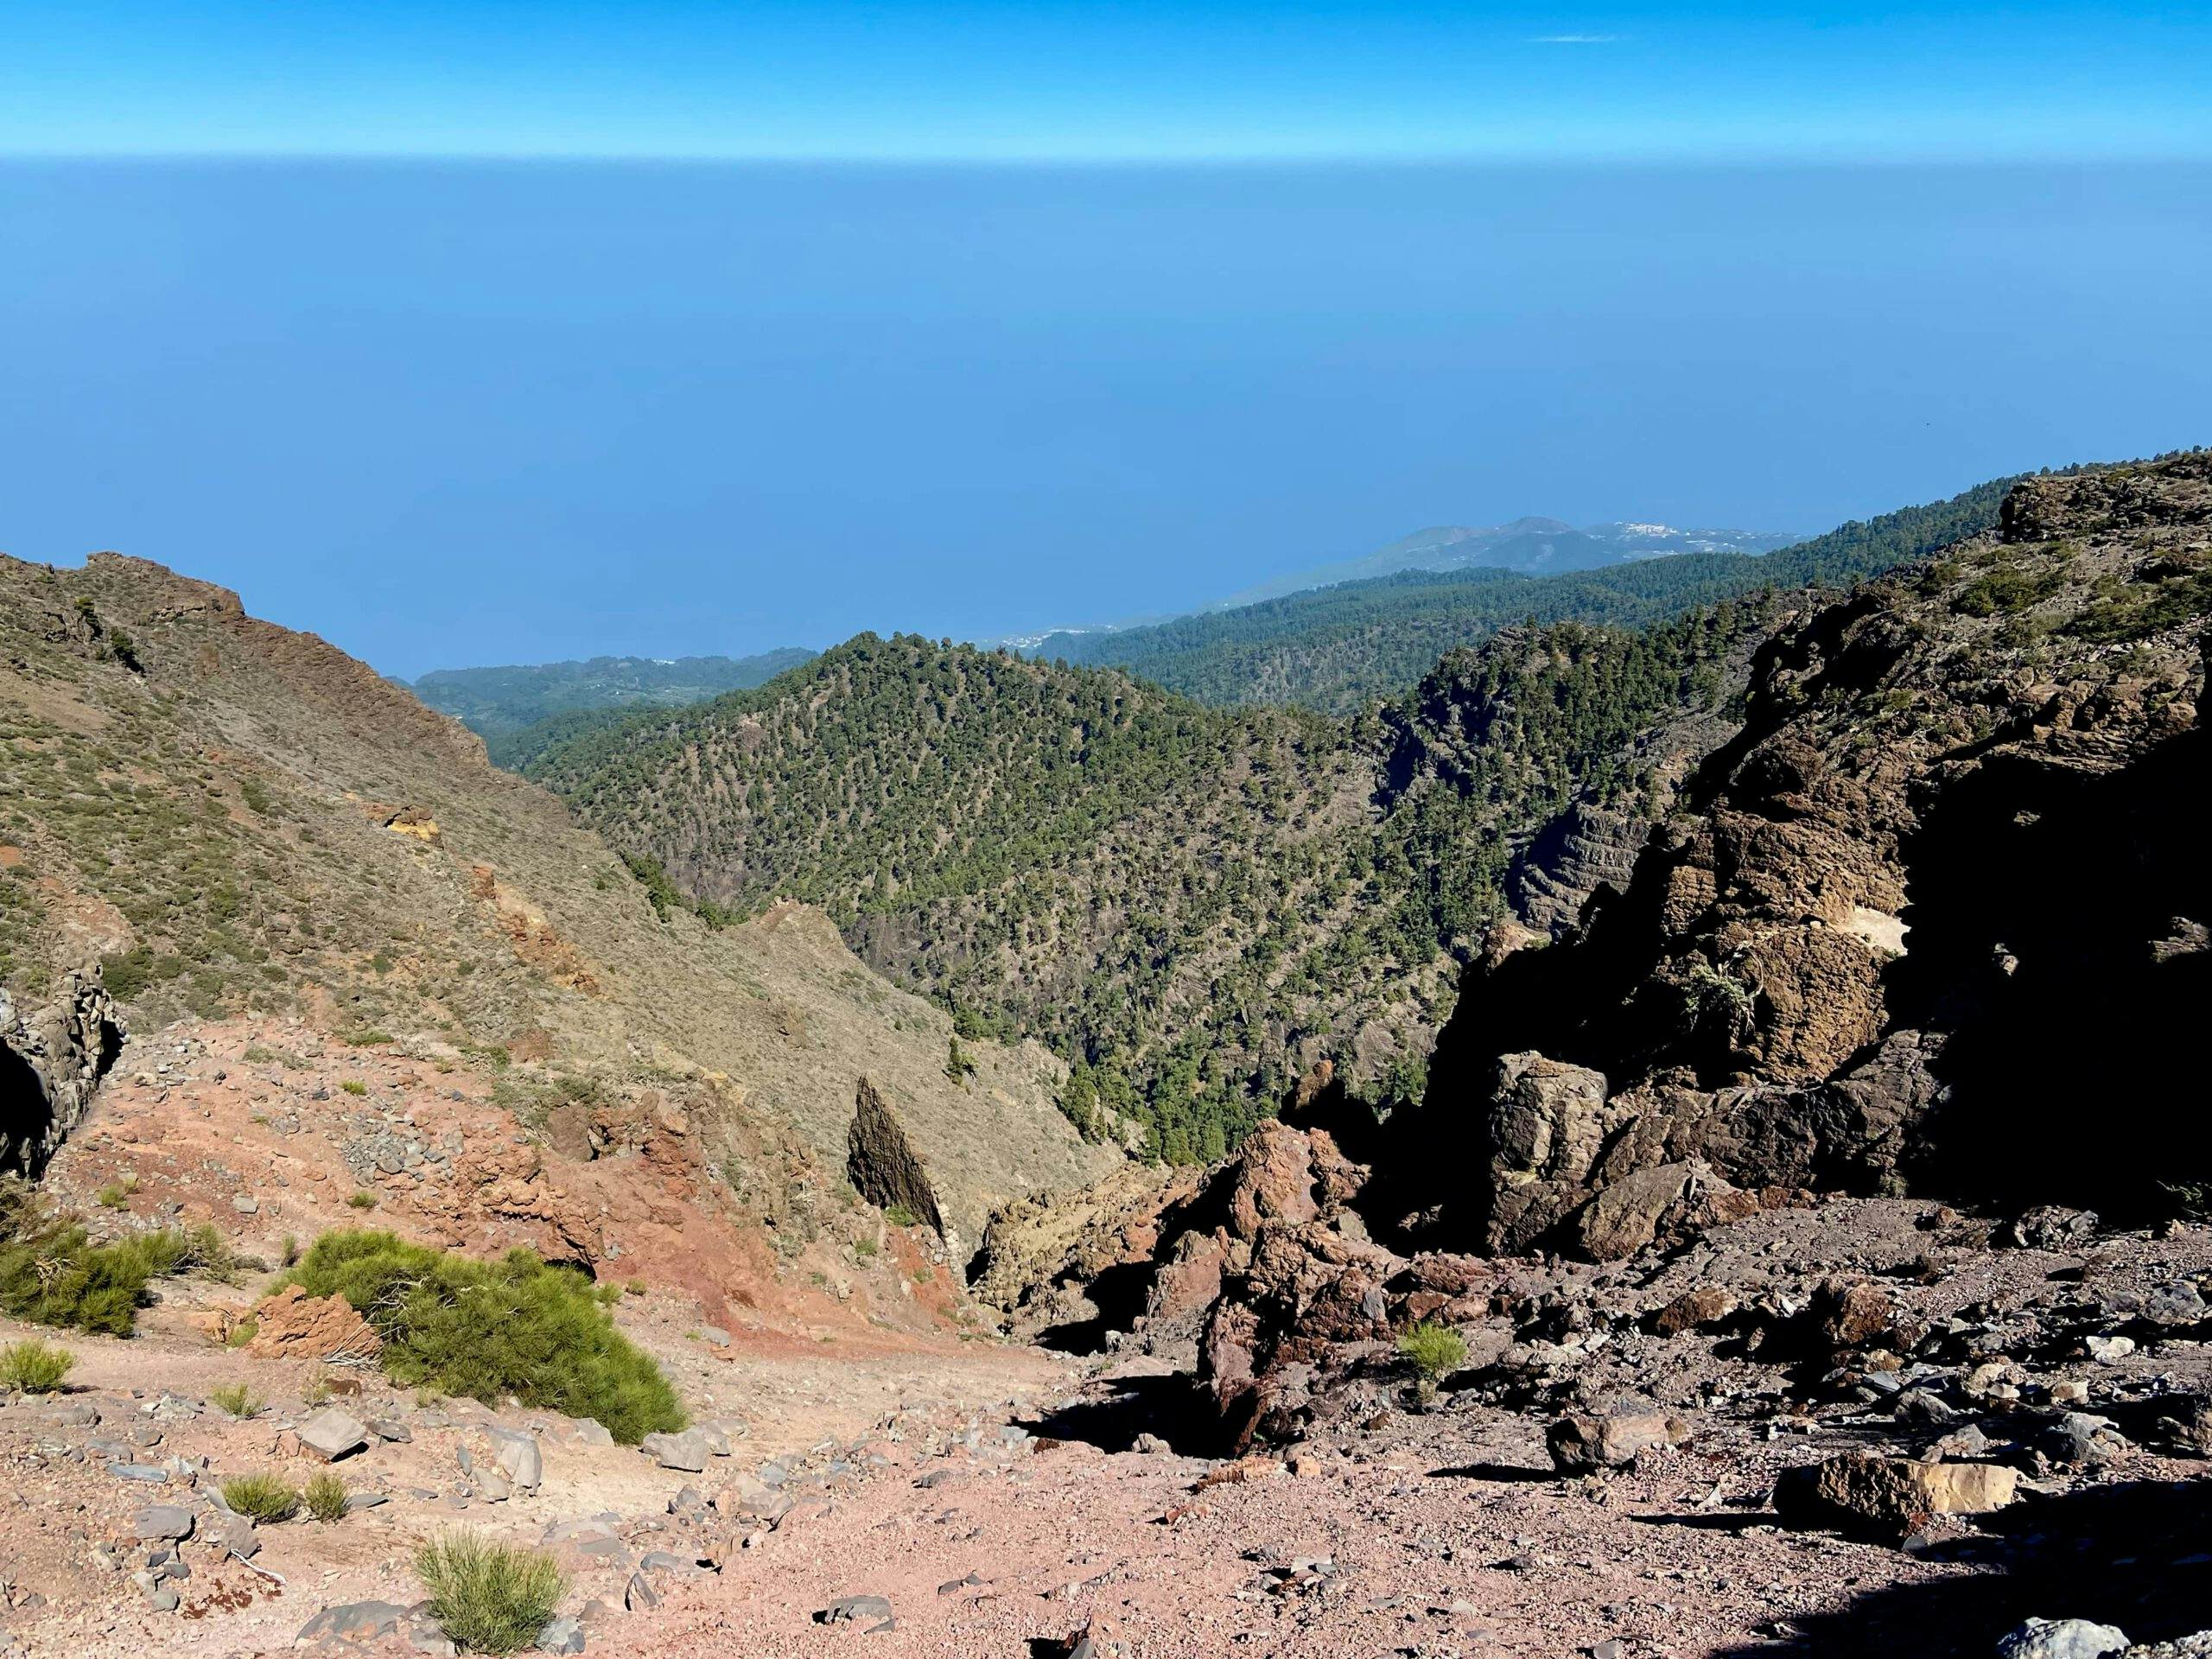 View of the east coast of La Palma